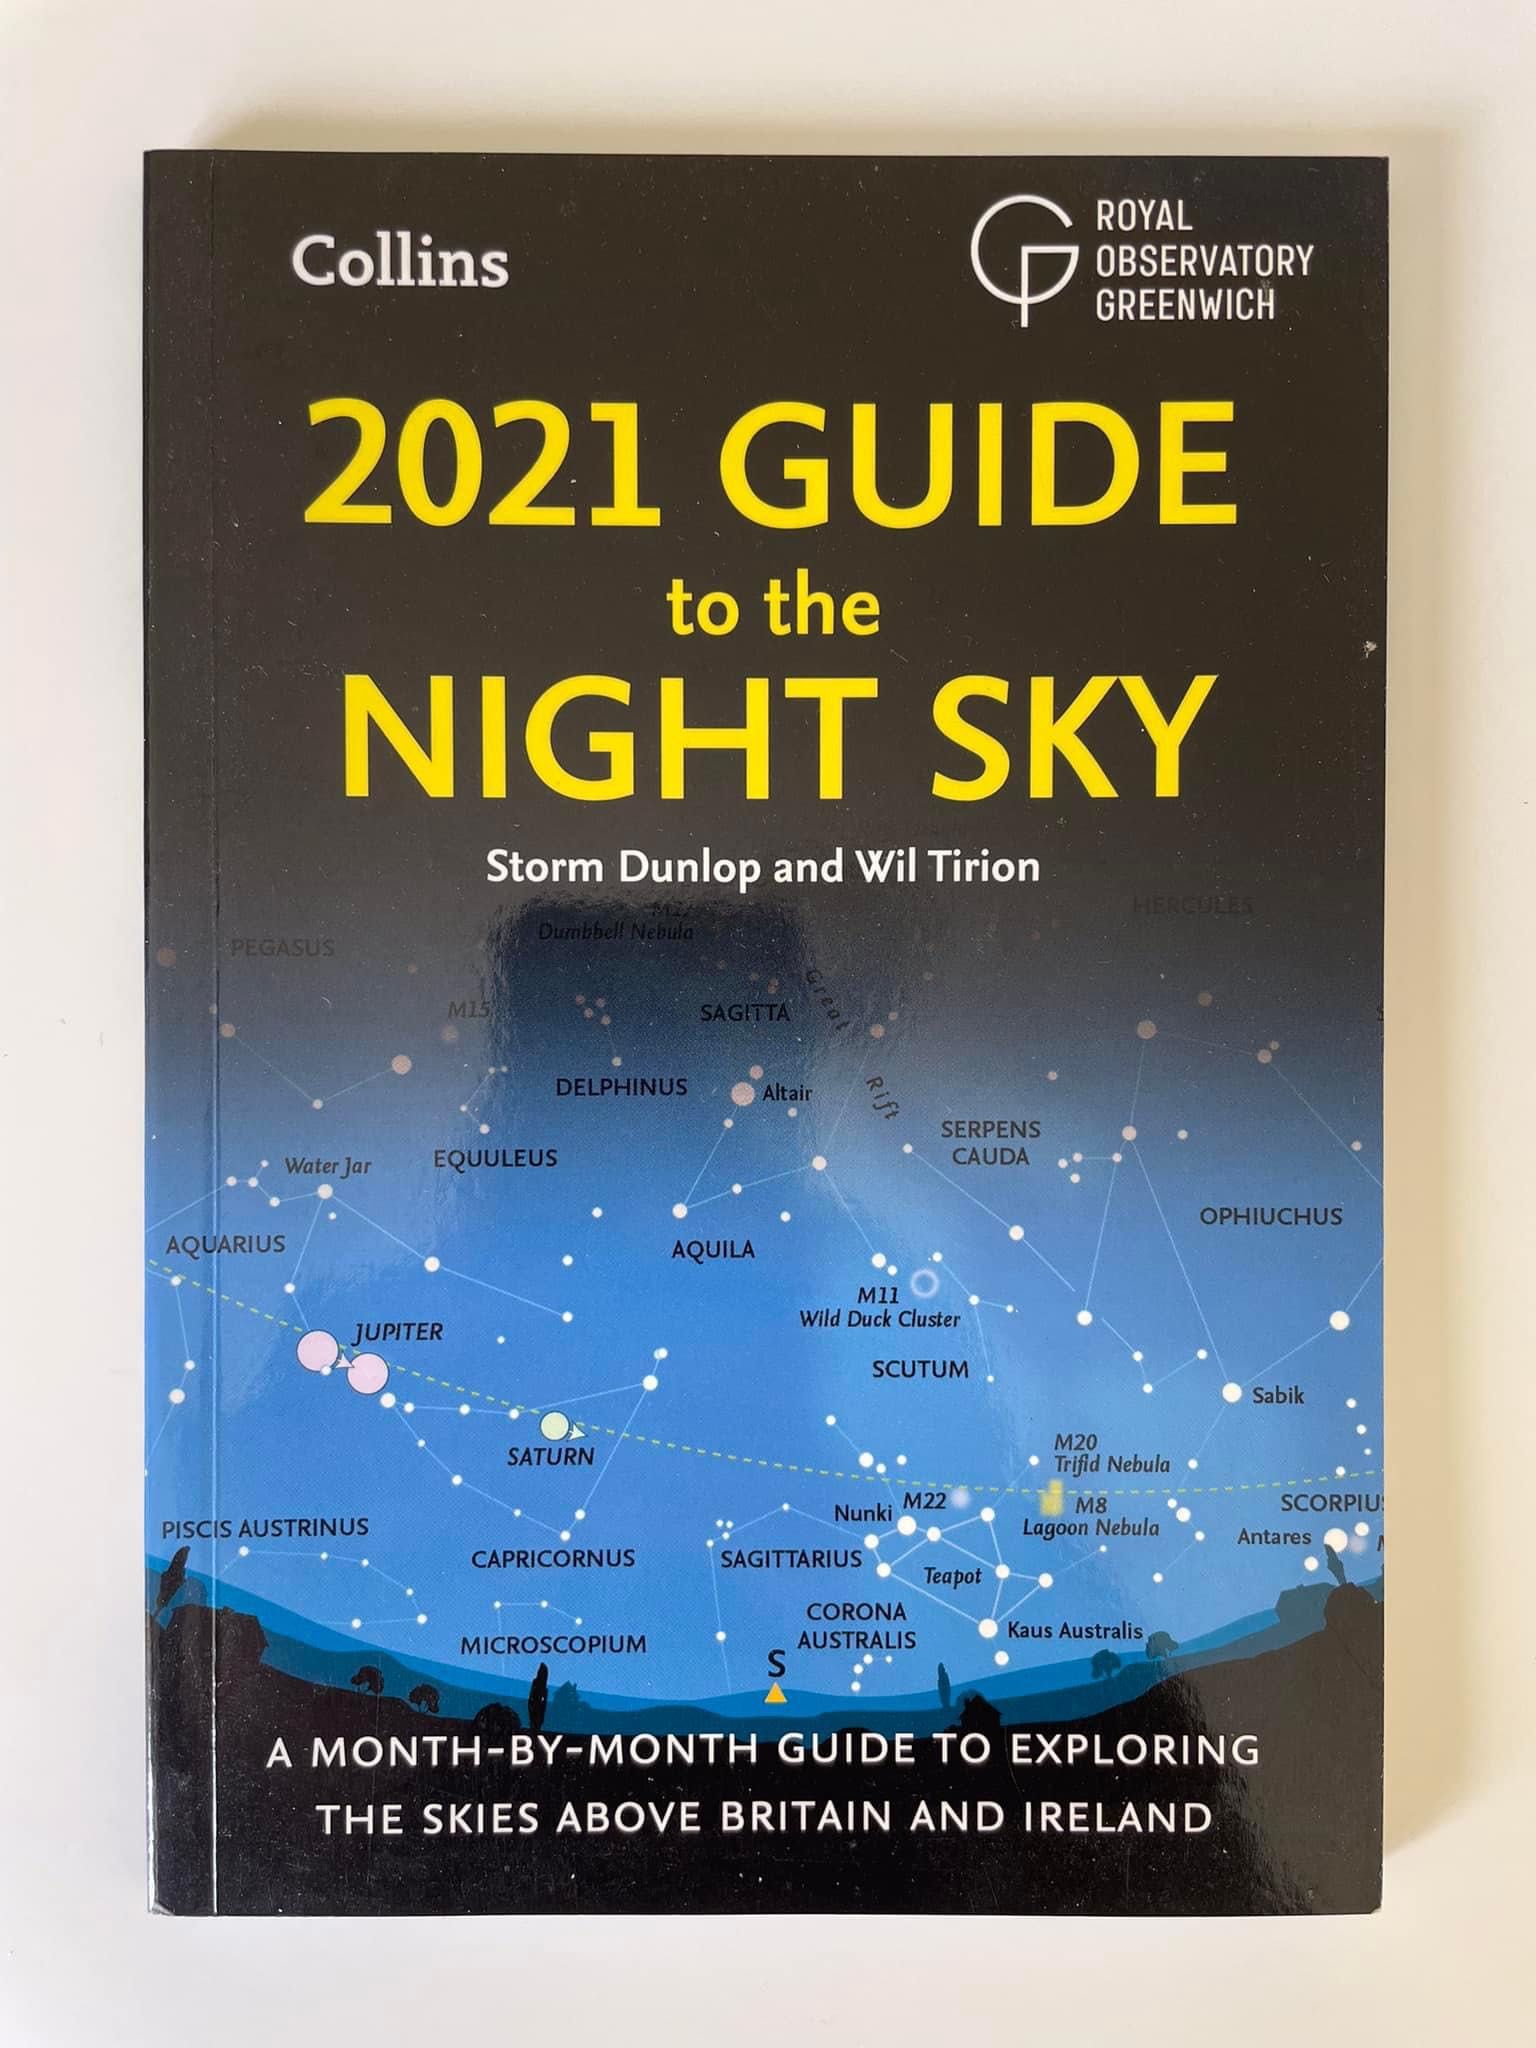 Astronomia - Guide to the Night Sky (portes grátis)